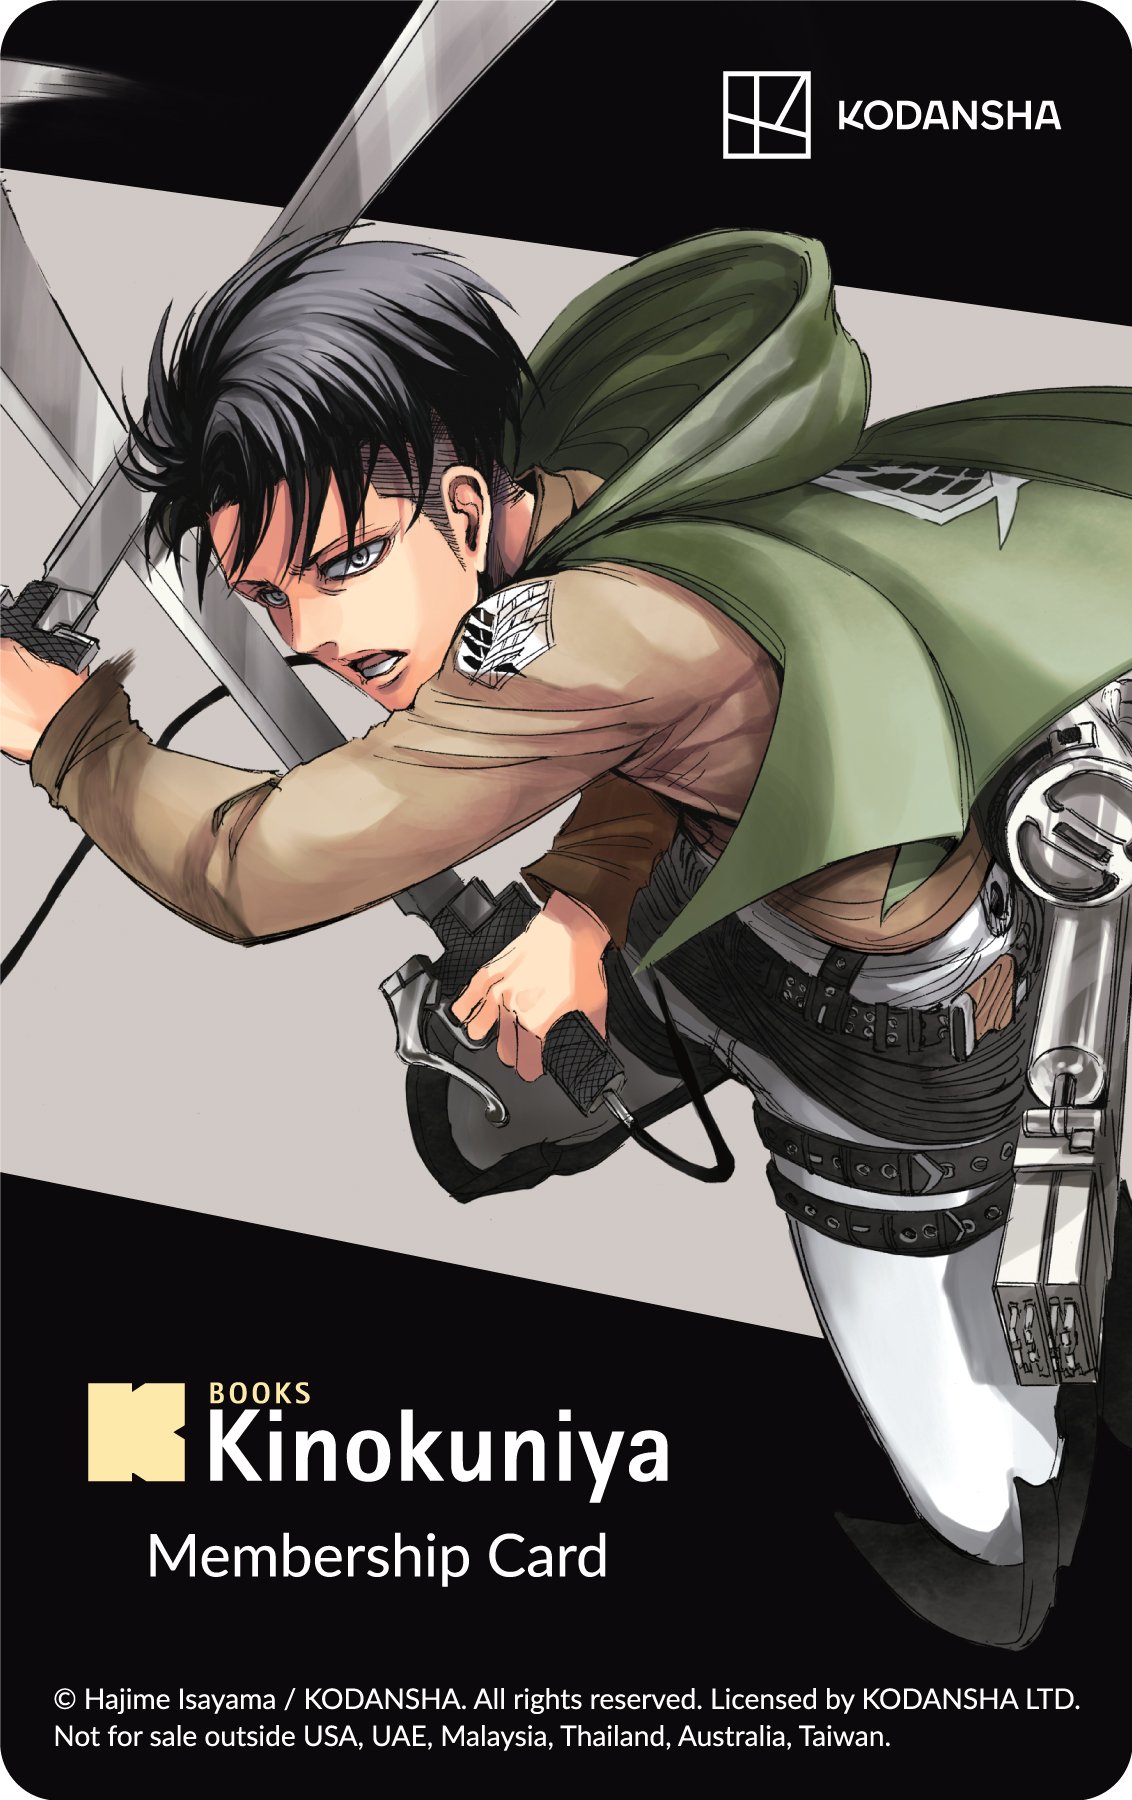 Shingeki No Kyojin The Final Season Part 3 (CONCLUSION) Poster/Key